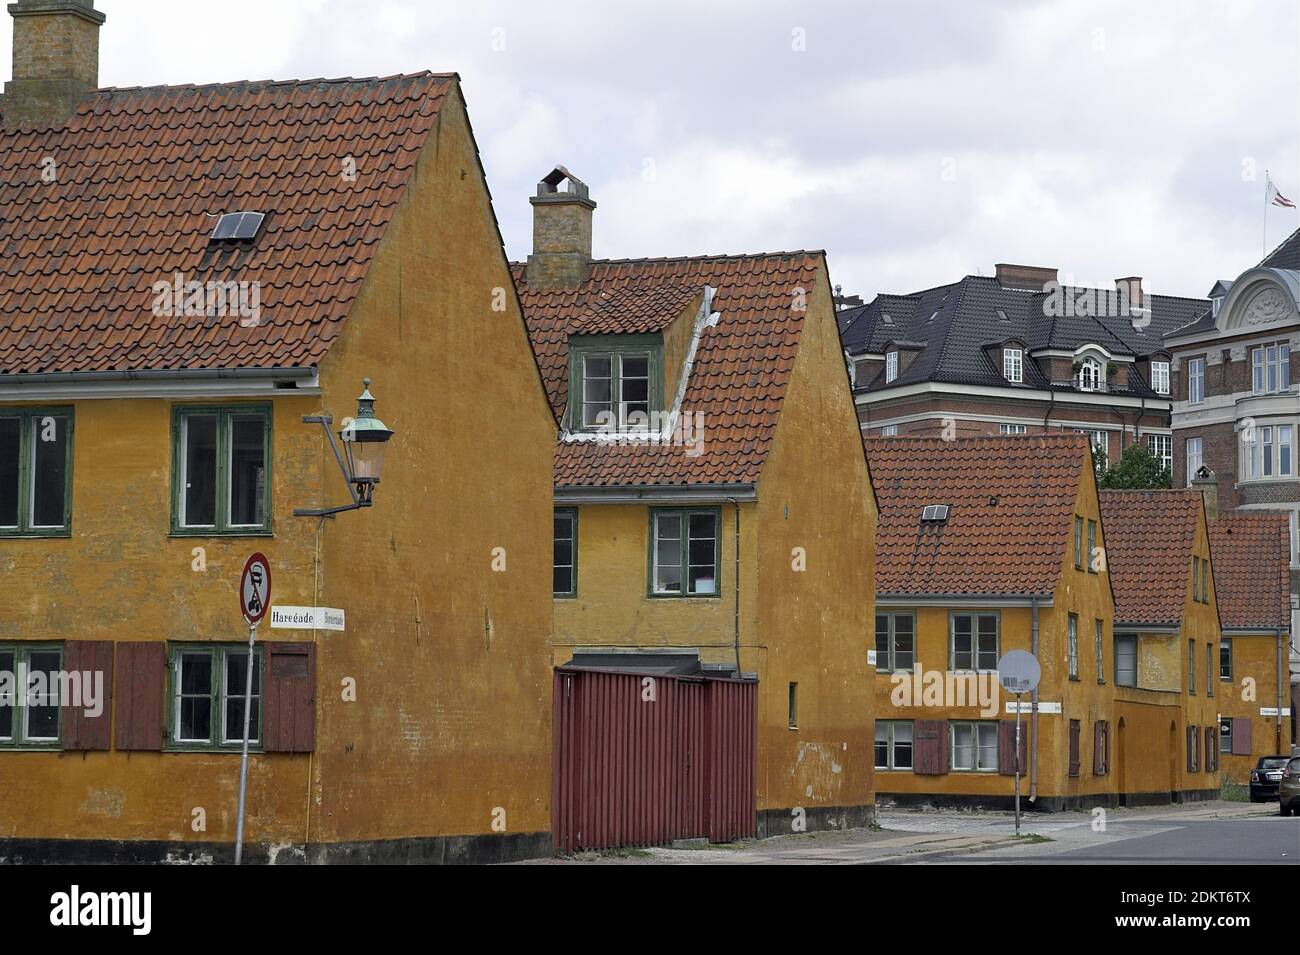 Copenhagen, Kopenhagen, Danimarca, Dänemark; Nyboder - quartiere residenziale storico - ex caserme. Historiisches Wohnviertel - ehemaligie Kaserne. Foto Stock